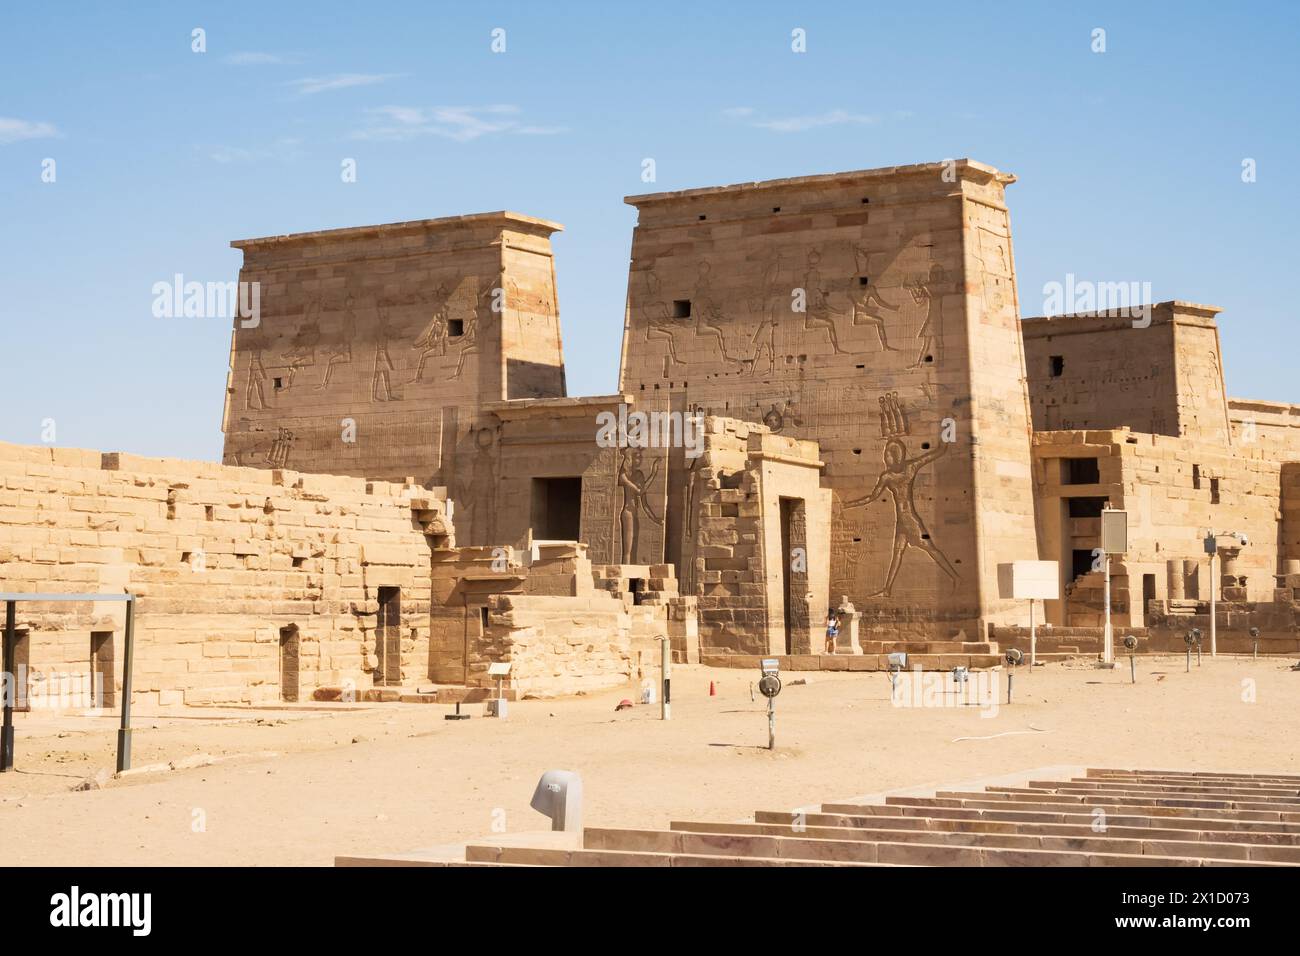 Complexe du temple de Philae, île d'Agilkia, réservoir du barrage d'Assouan. Lieu de sépulture d'Osiris. Égypte Banque D'Images